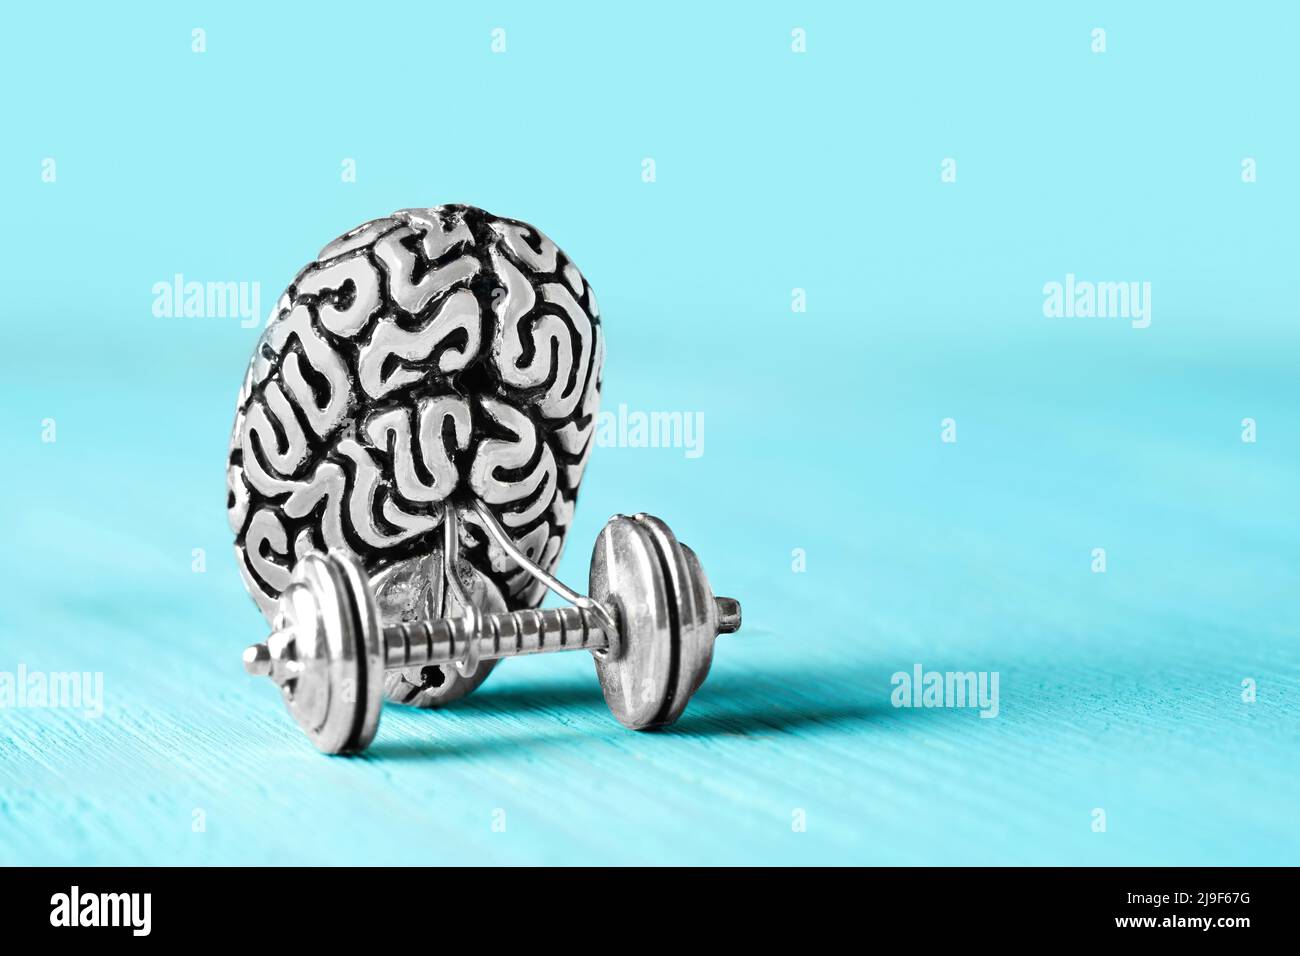 Copia di acciaio del cervello umano che solleva un dumbbell. Concetto di allenamento cerebrale. Foto Stock